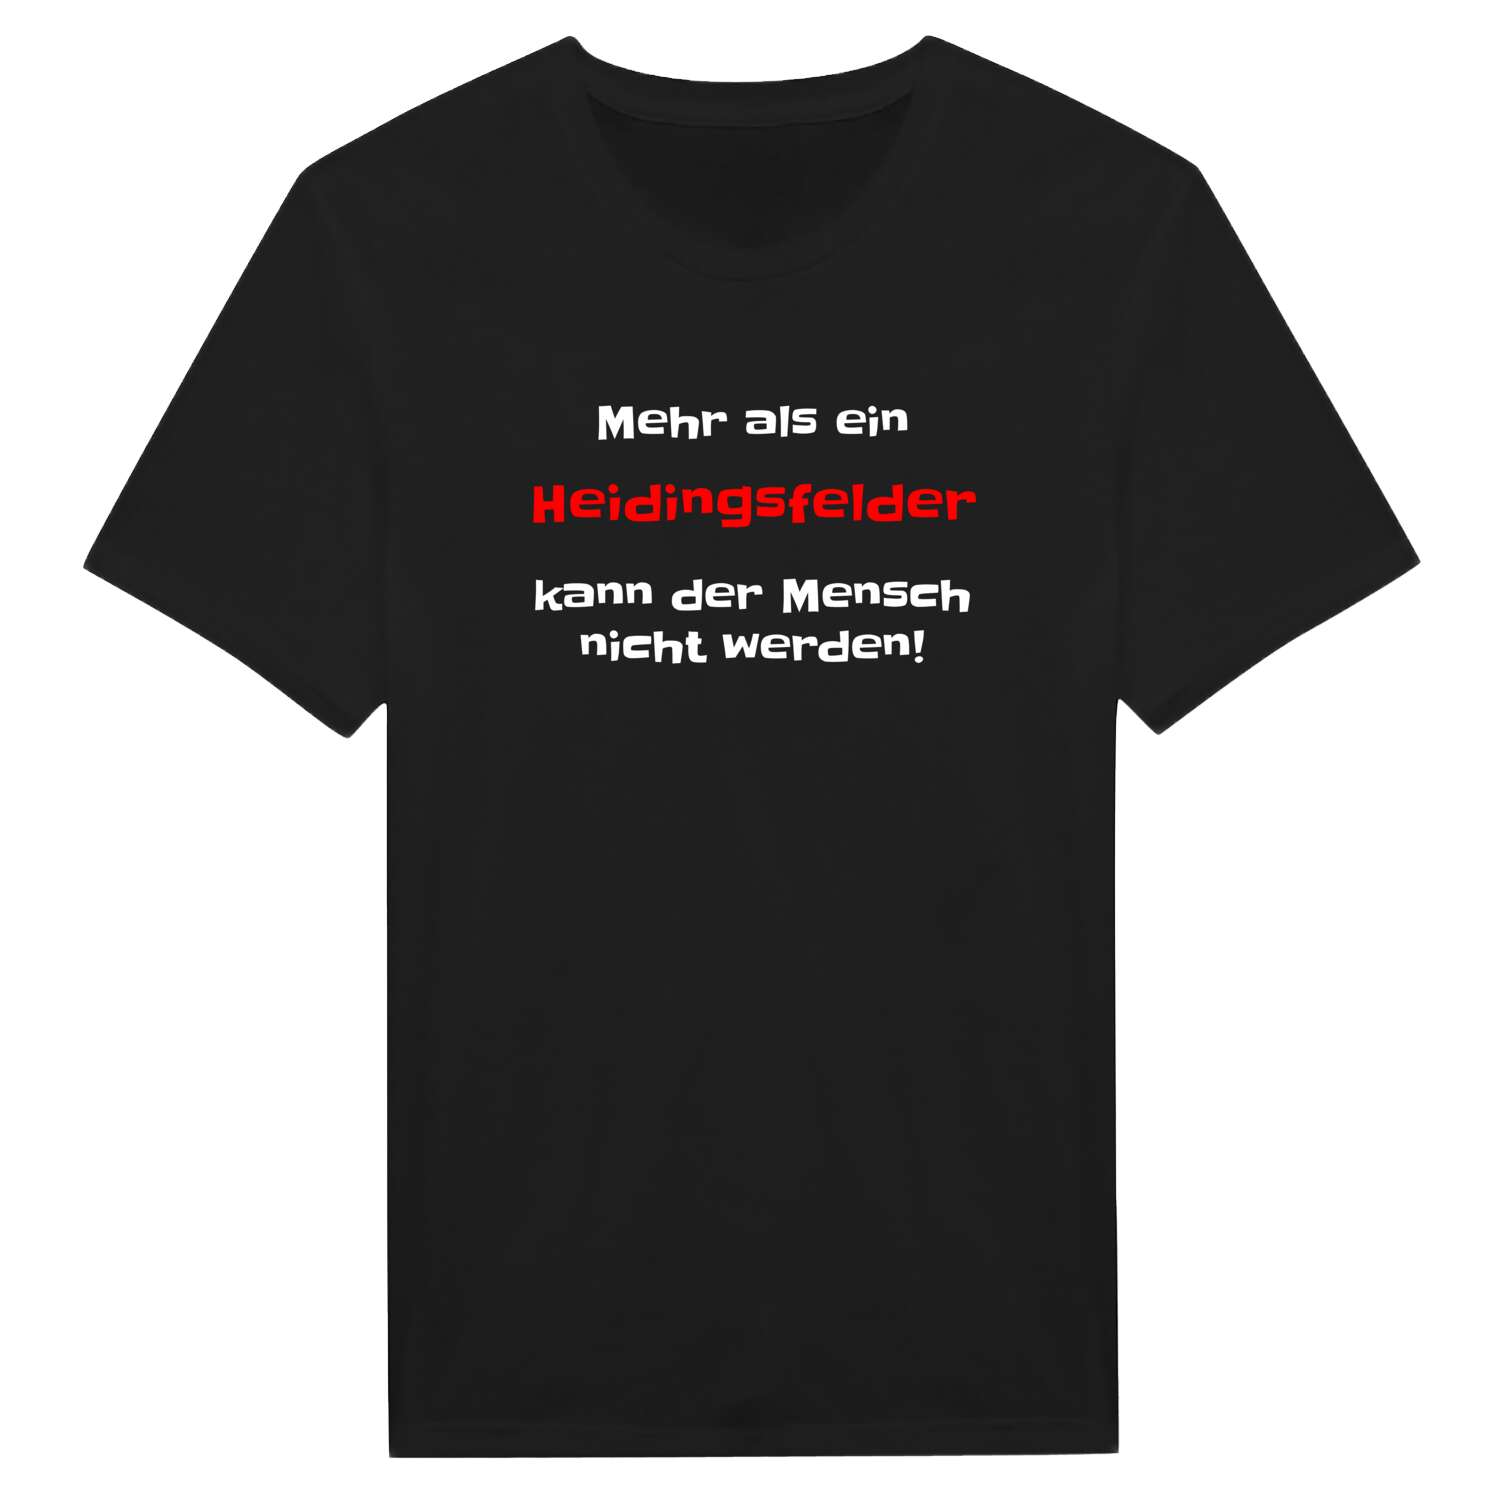 Heidingsfeld T-Shirt »Mehr als ein«